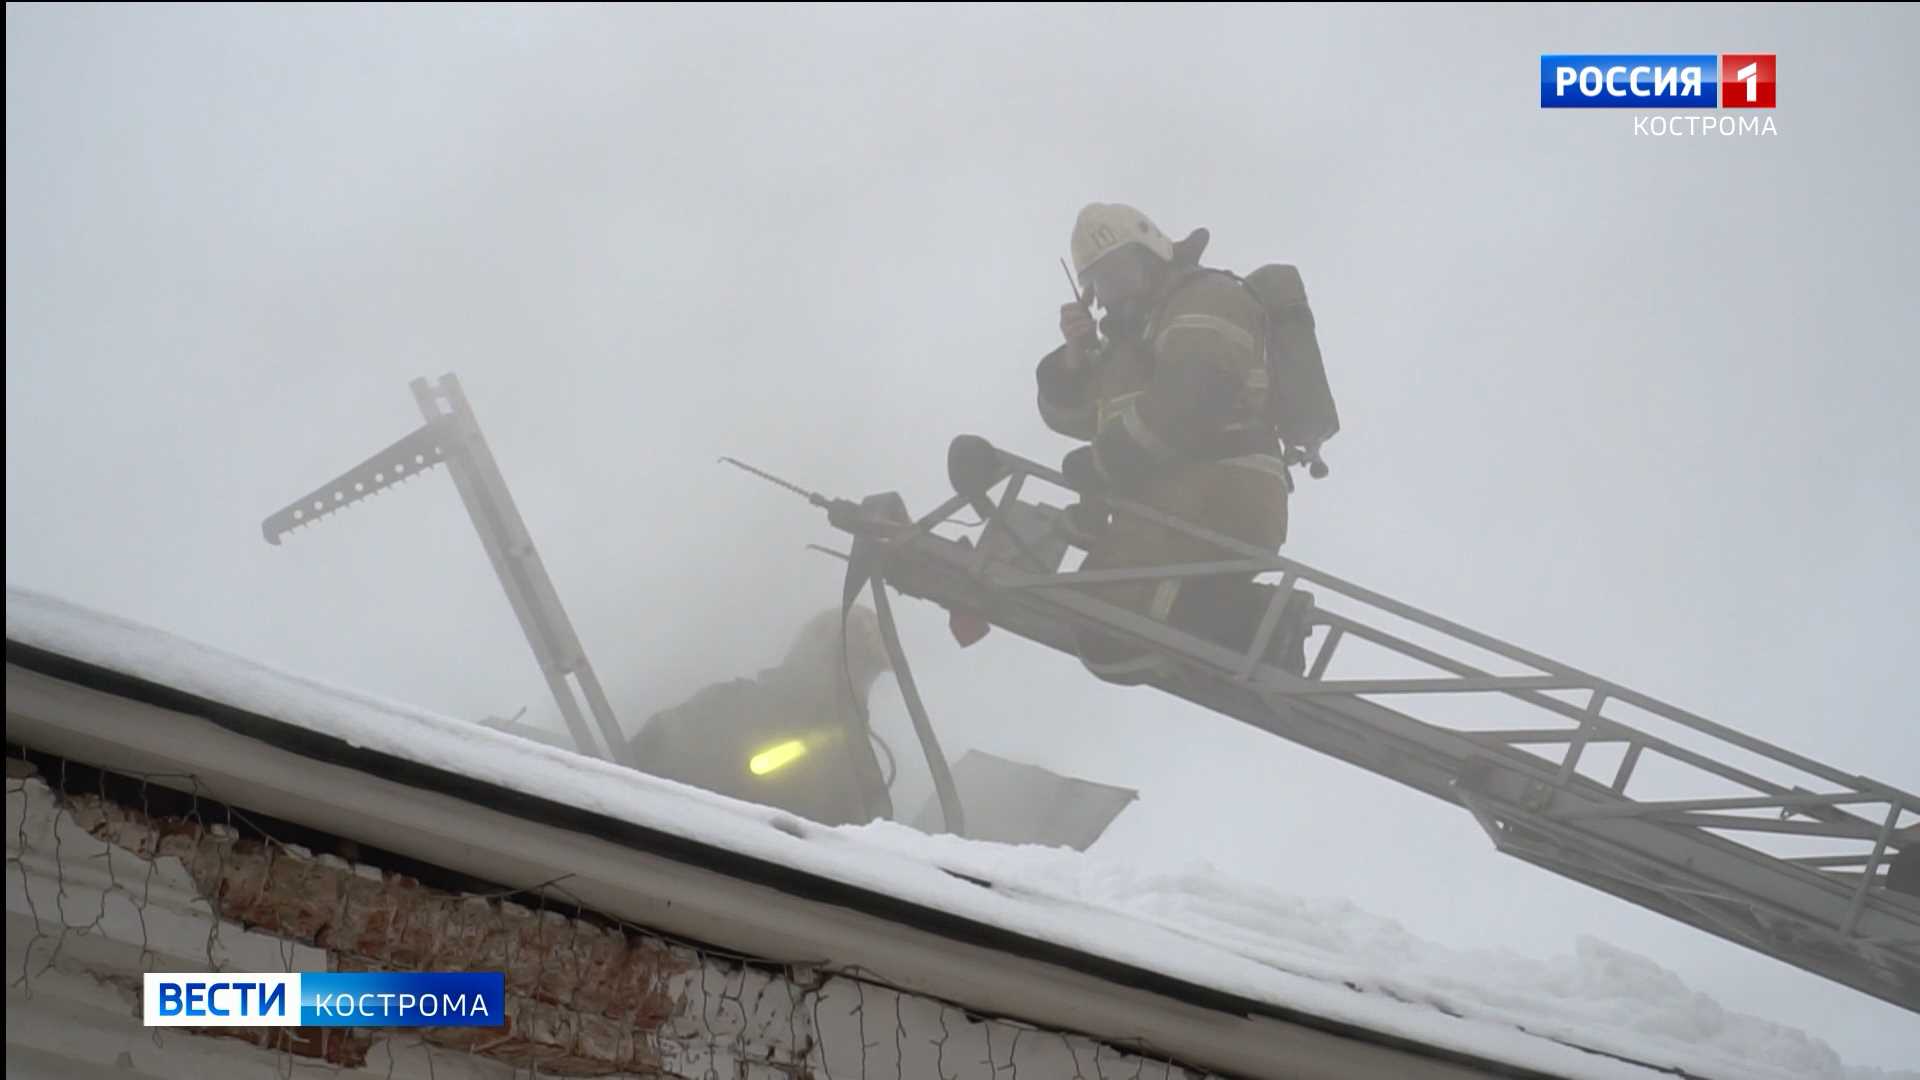 Сотрудники МЧС назвали причину пожара в центре Костромы